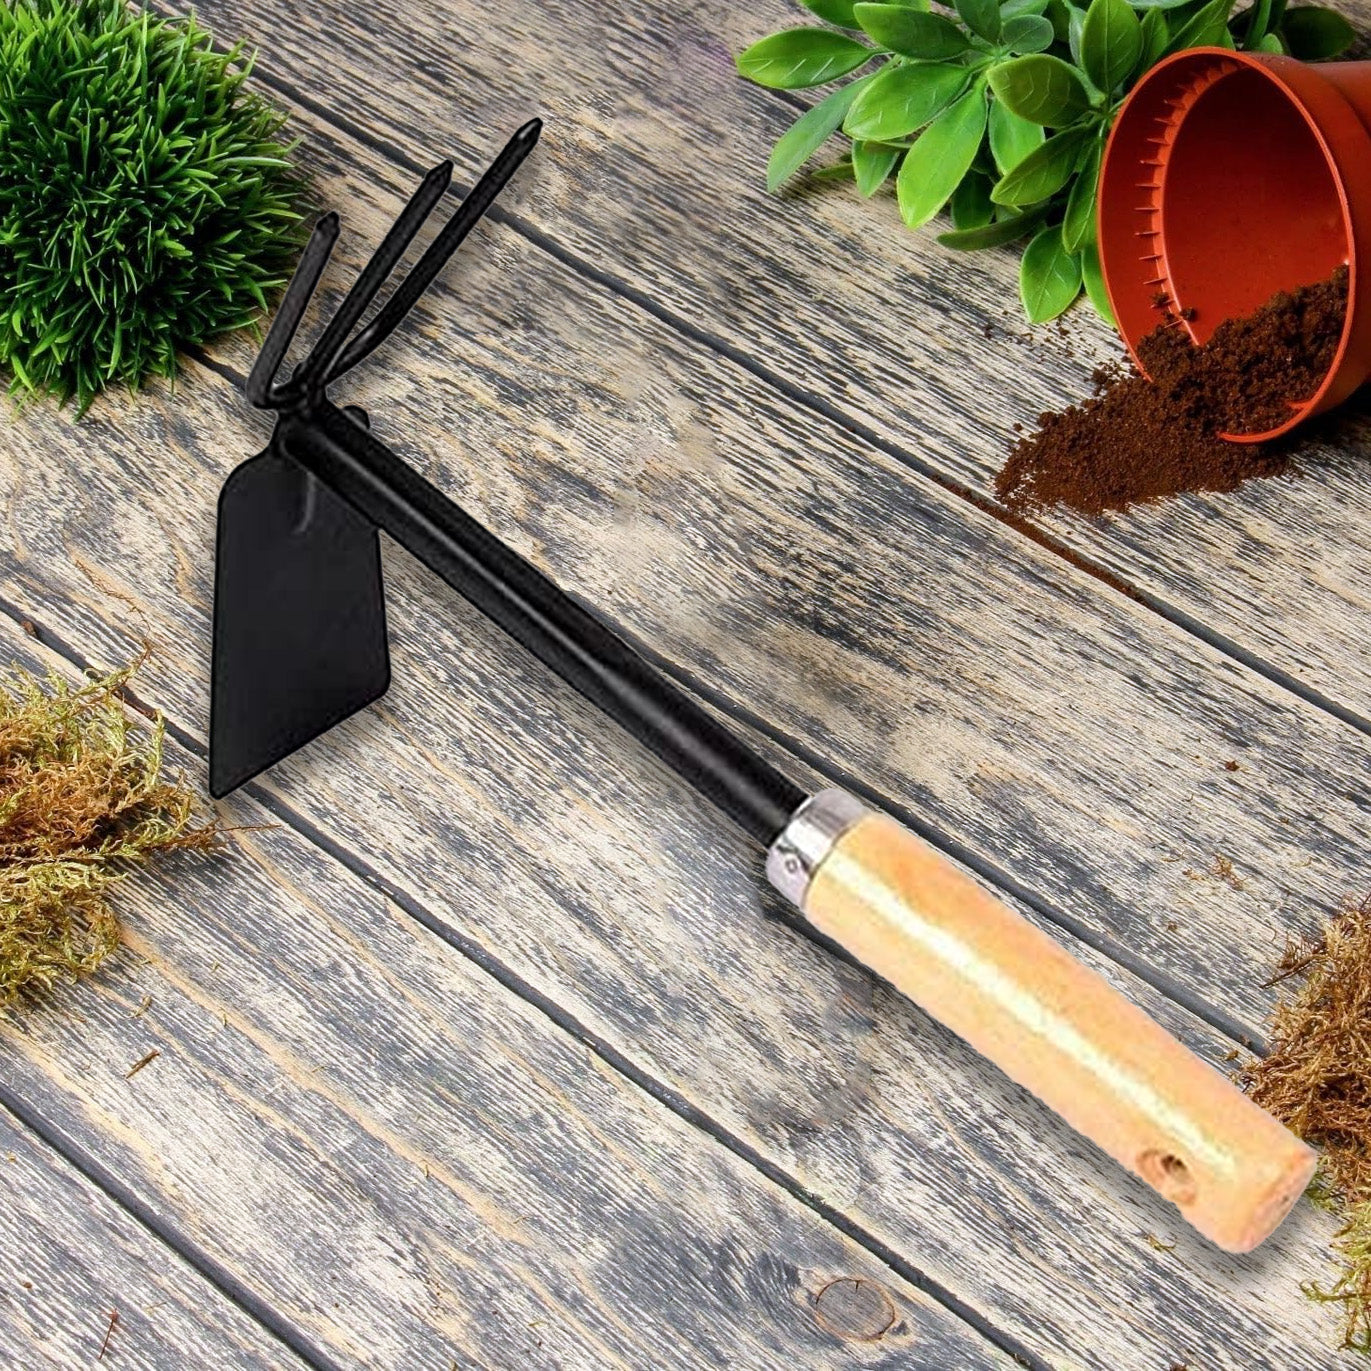 Casa De Amor Gardening Tool Double Hoe with Wooden Handle | 2 in 1 Garden Tool